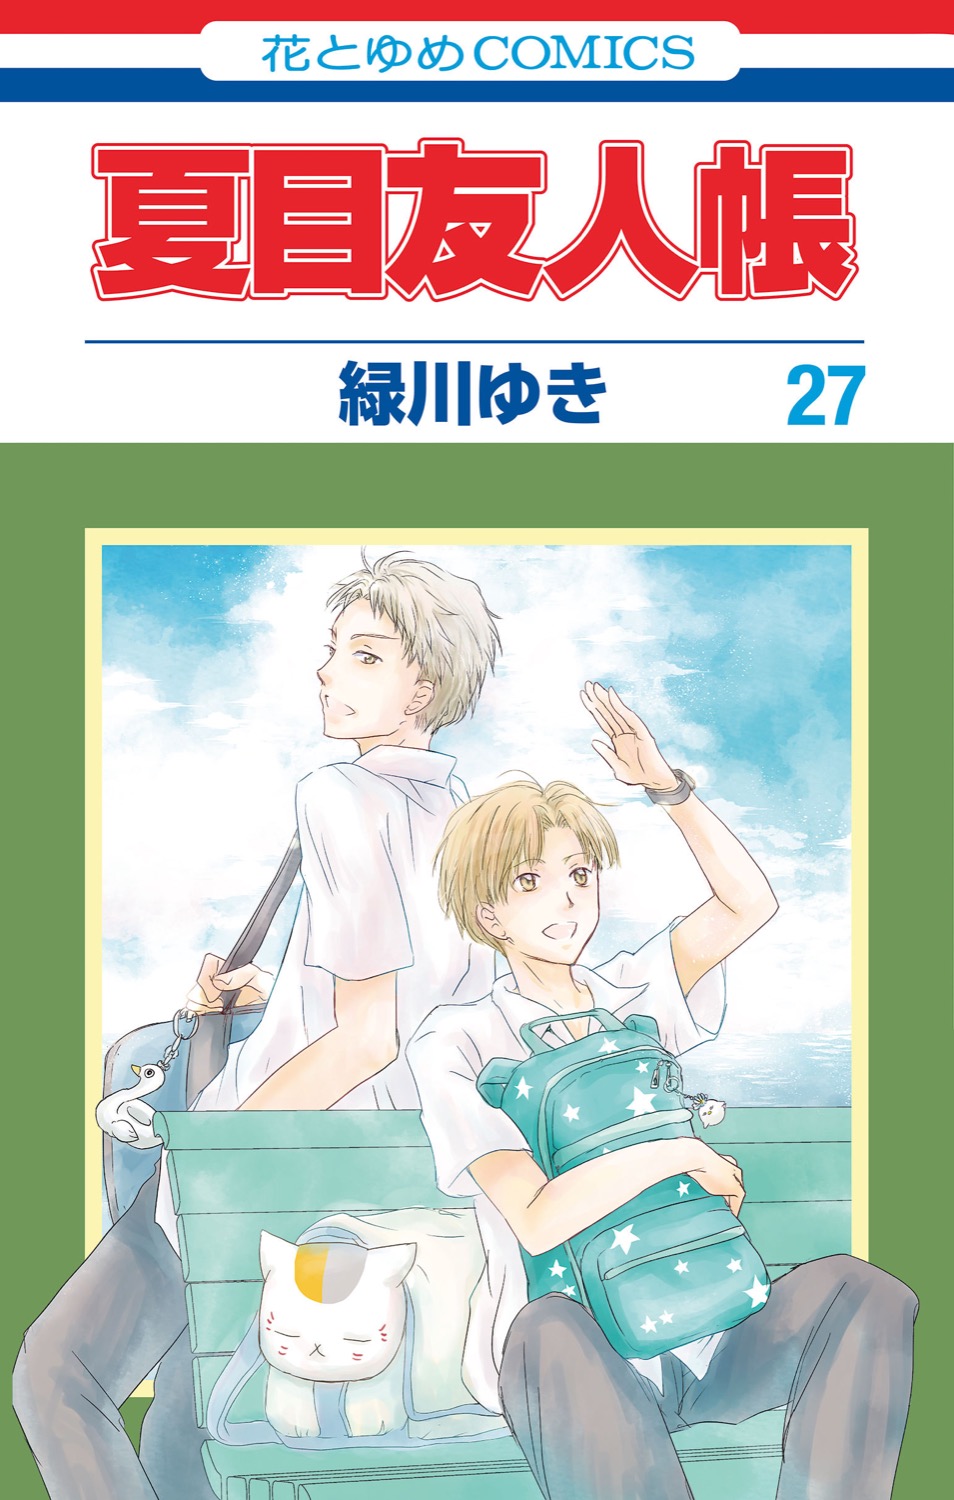 夏目友人帳 第28巻 5月2日にストラップ付き特装版と同時発売!